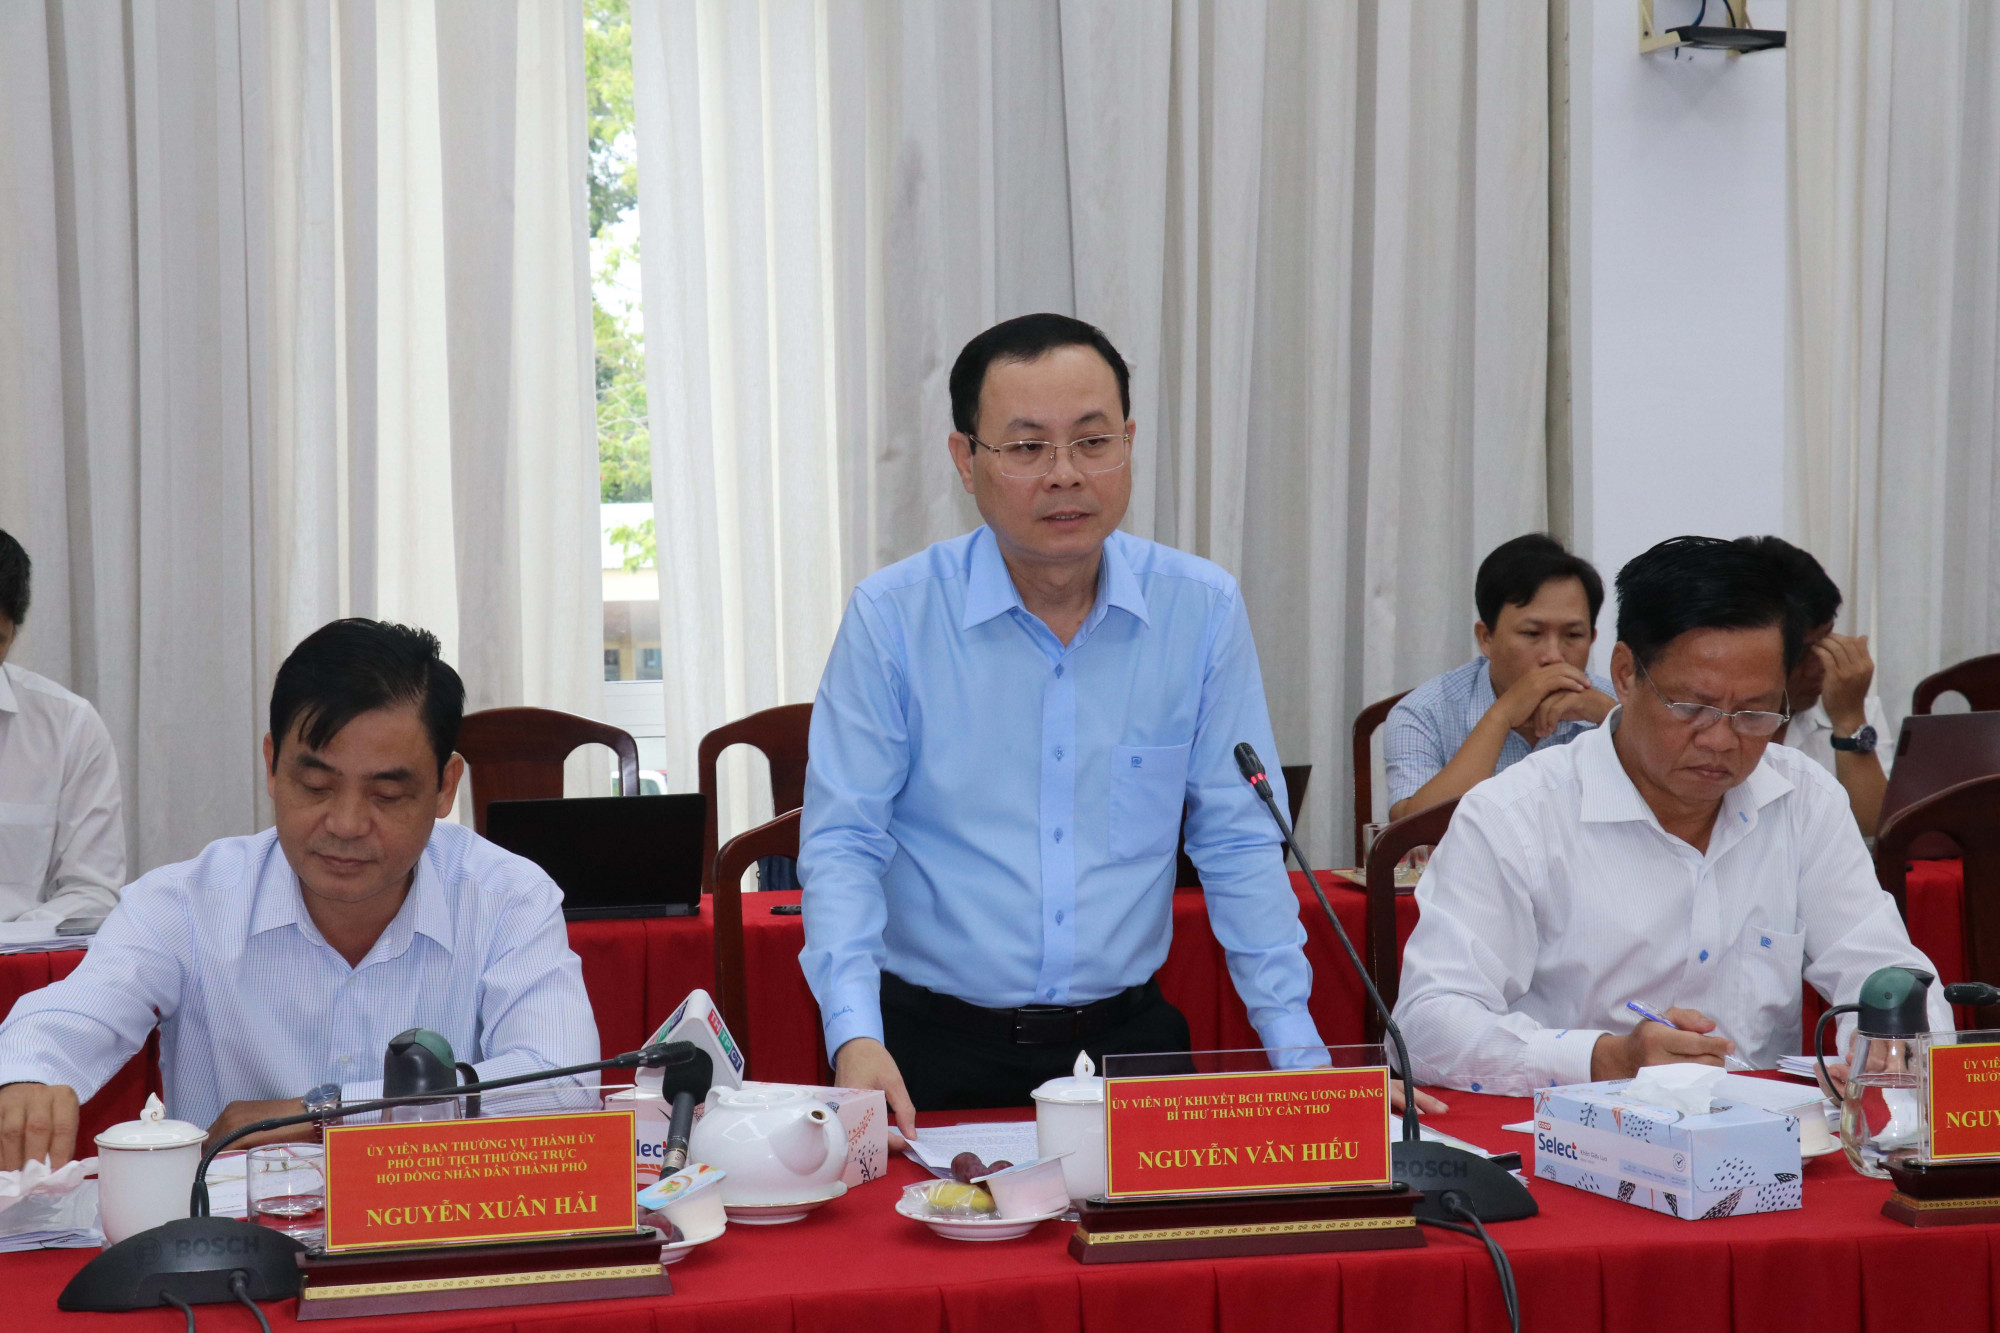 Ông Nguyễn Văn Hiếu - Bí thư Thành ủy Cần Thơ phát biểu chỉ đao tại buổi làm việc